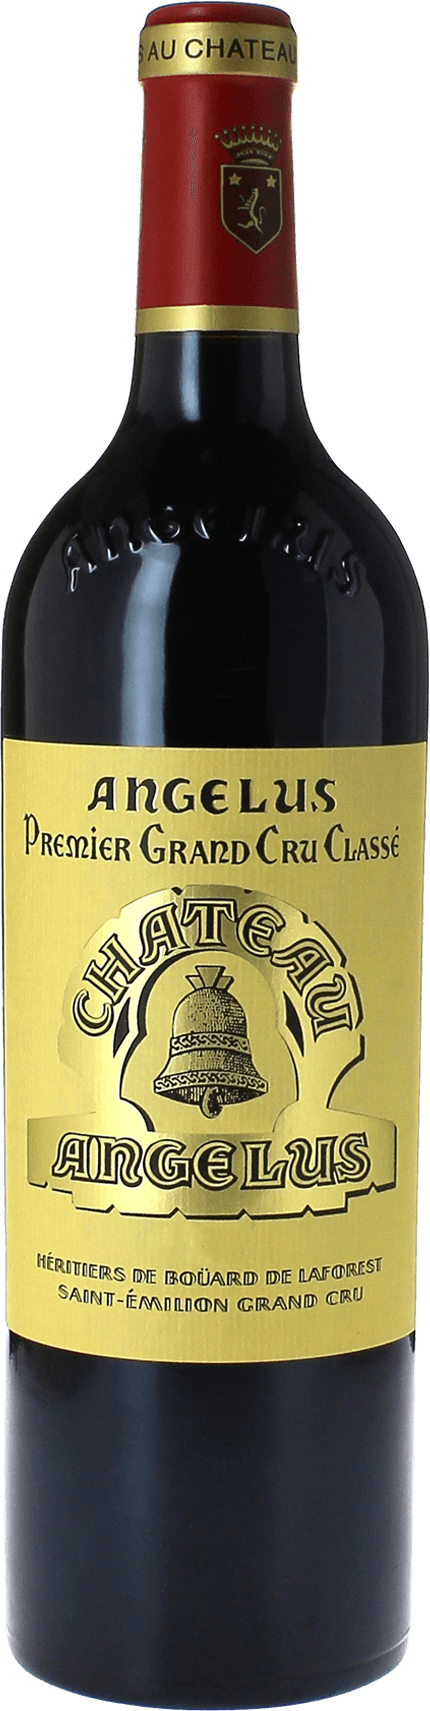 Angelus 1998 1er Grand cru class A Saint-Emilion, Bordeaux rouge